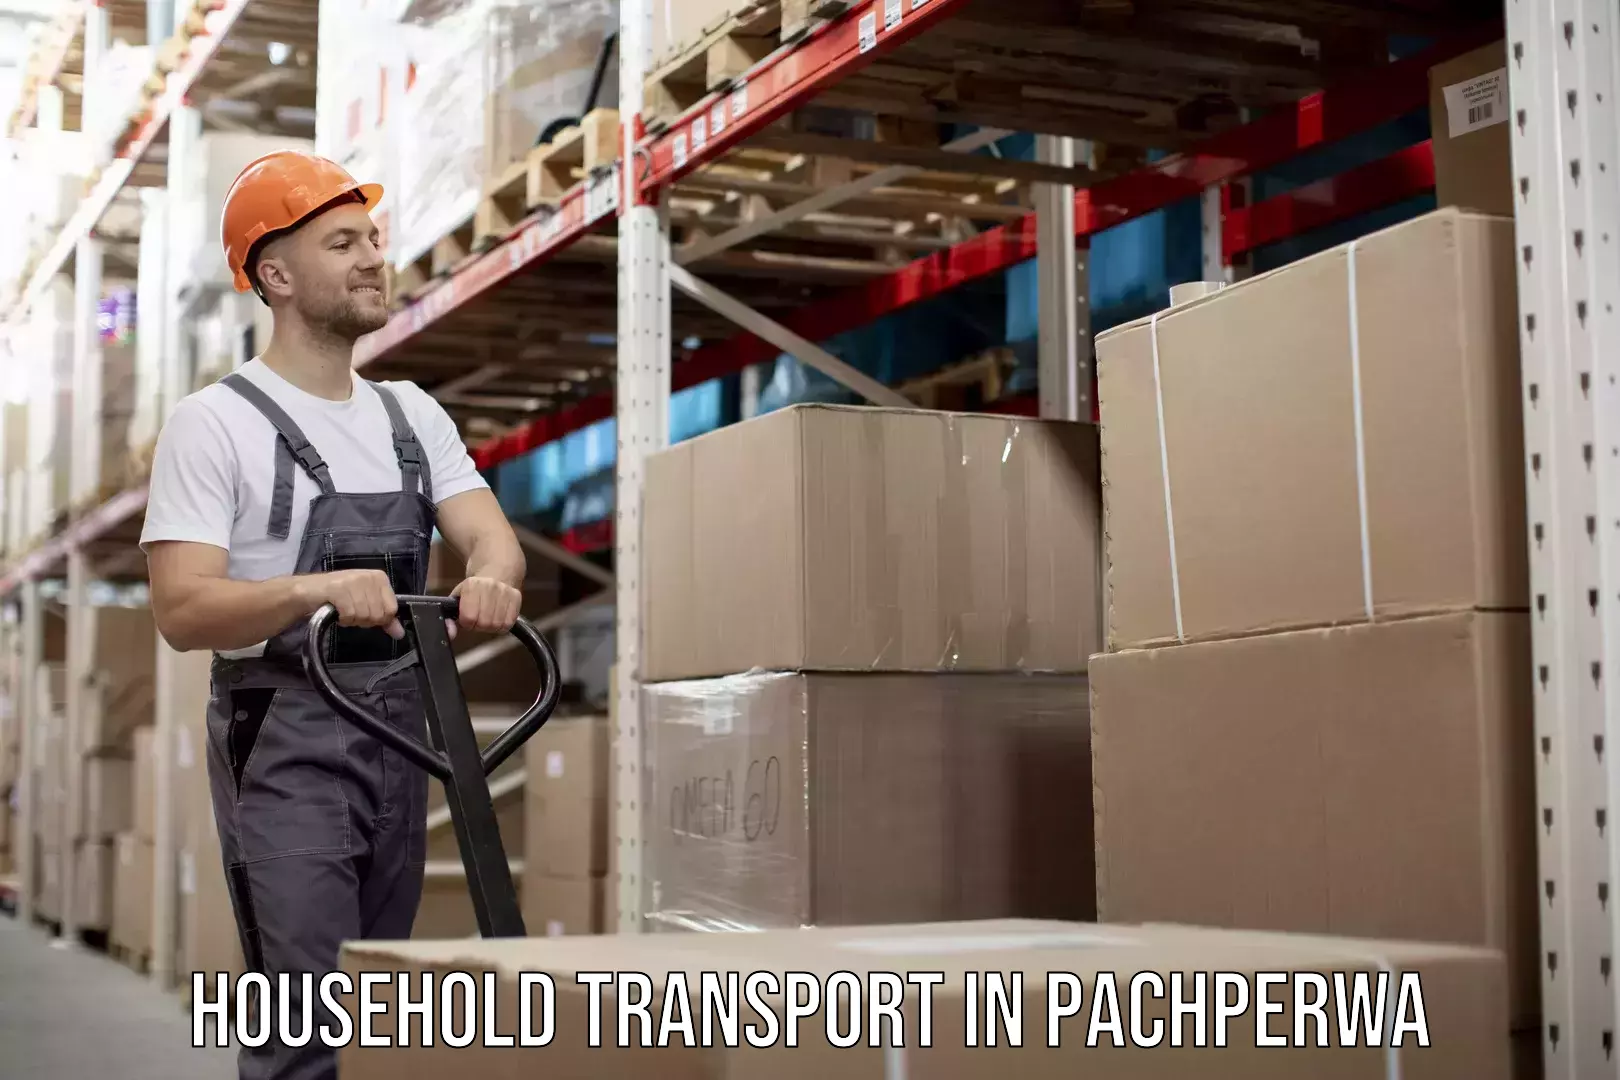 Expert goods movers in Pachperwa